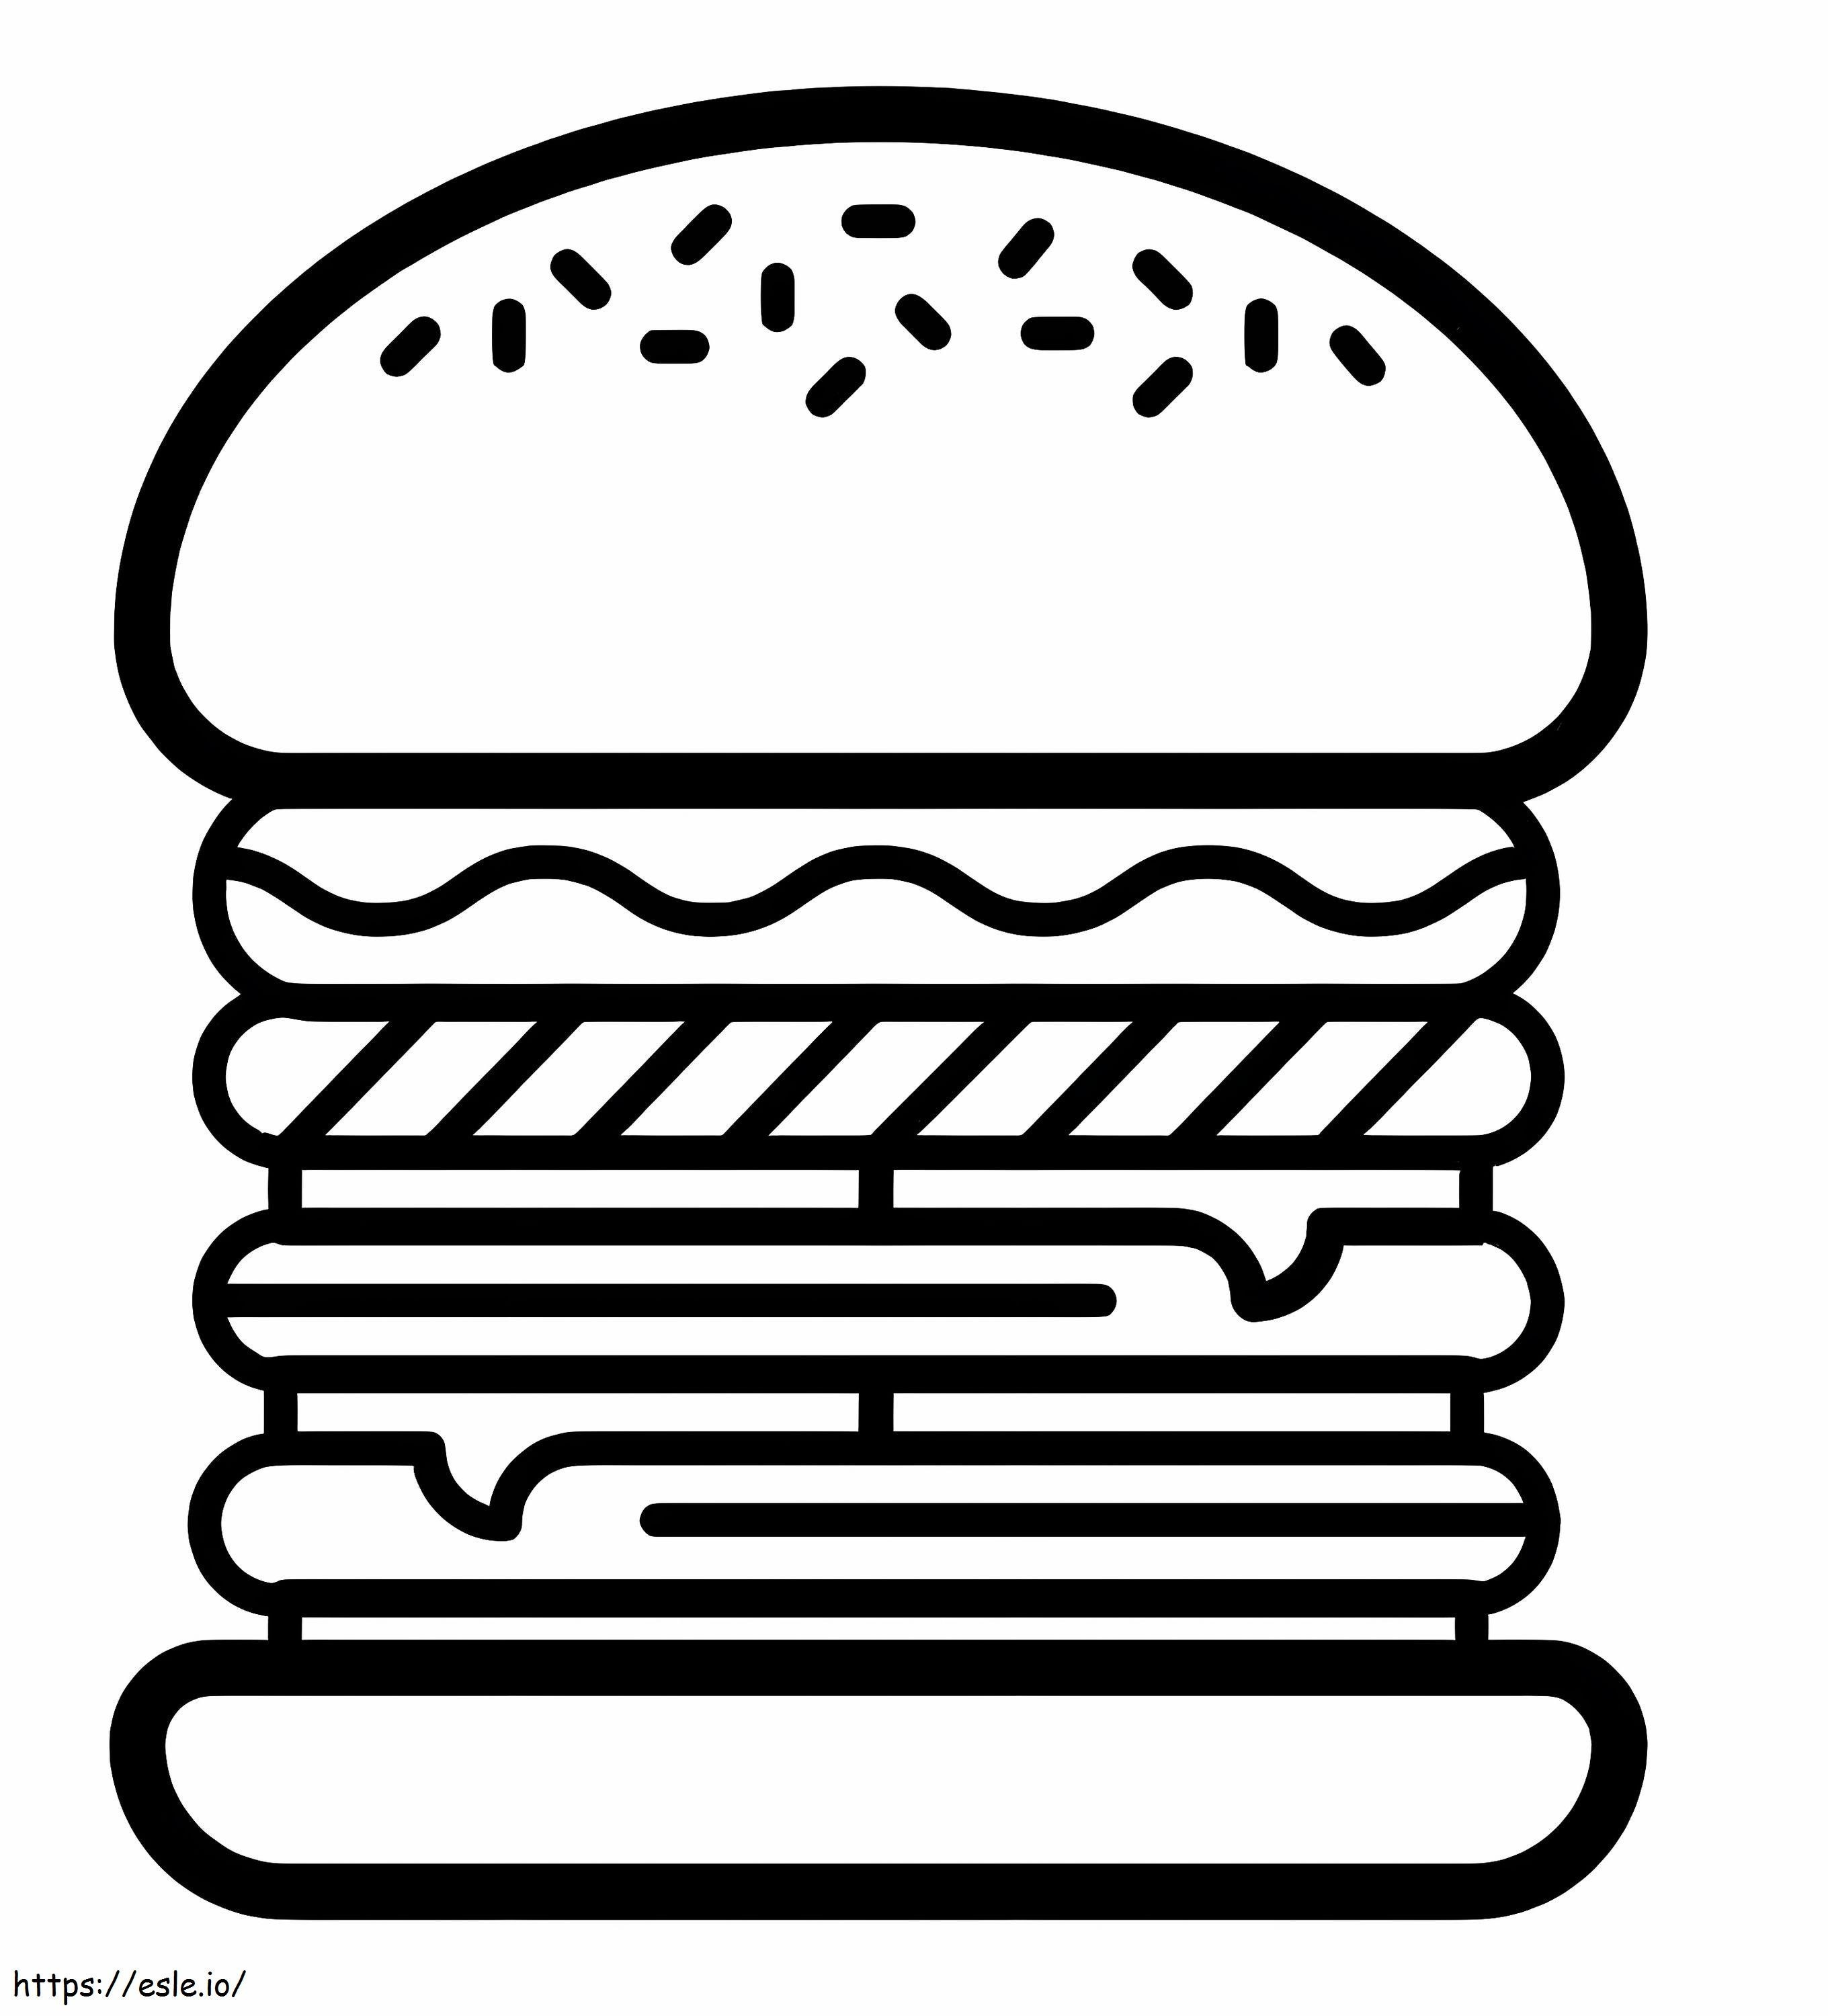 Icona dell'hamburger da colorare